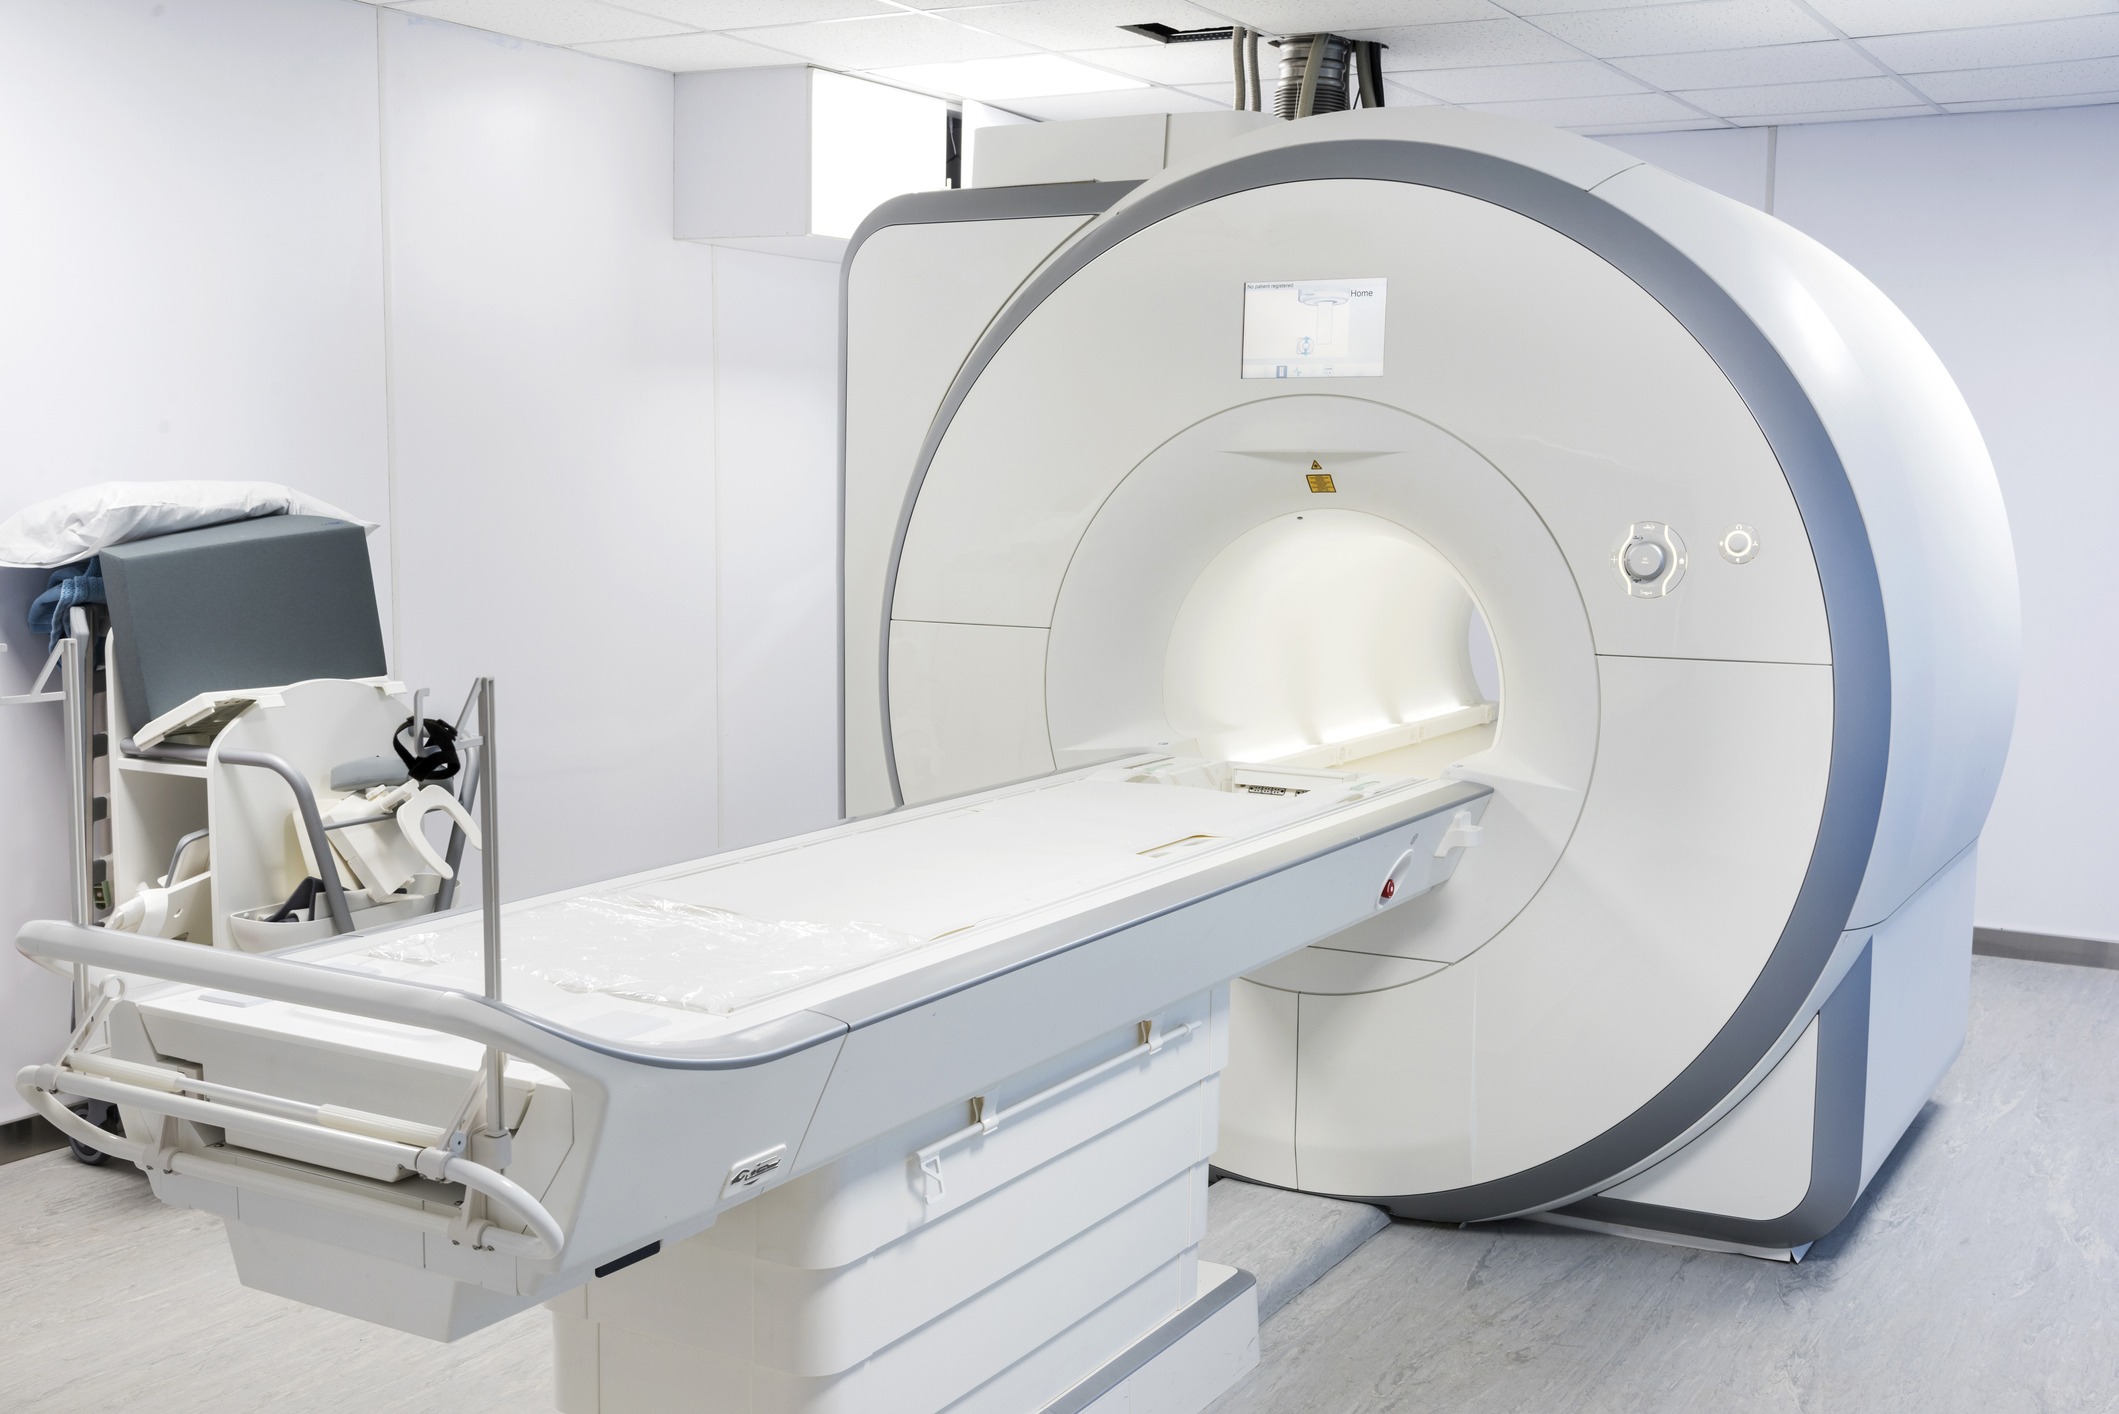 Image of MRI machine